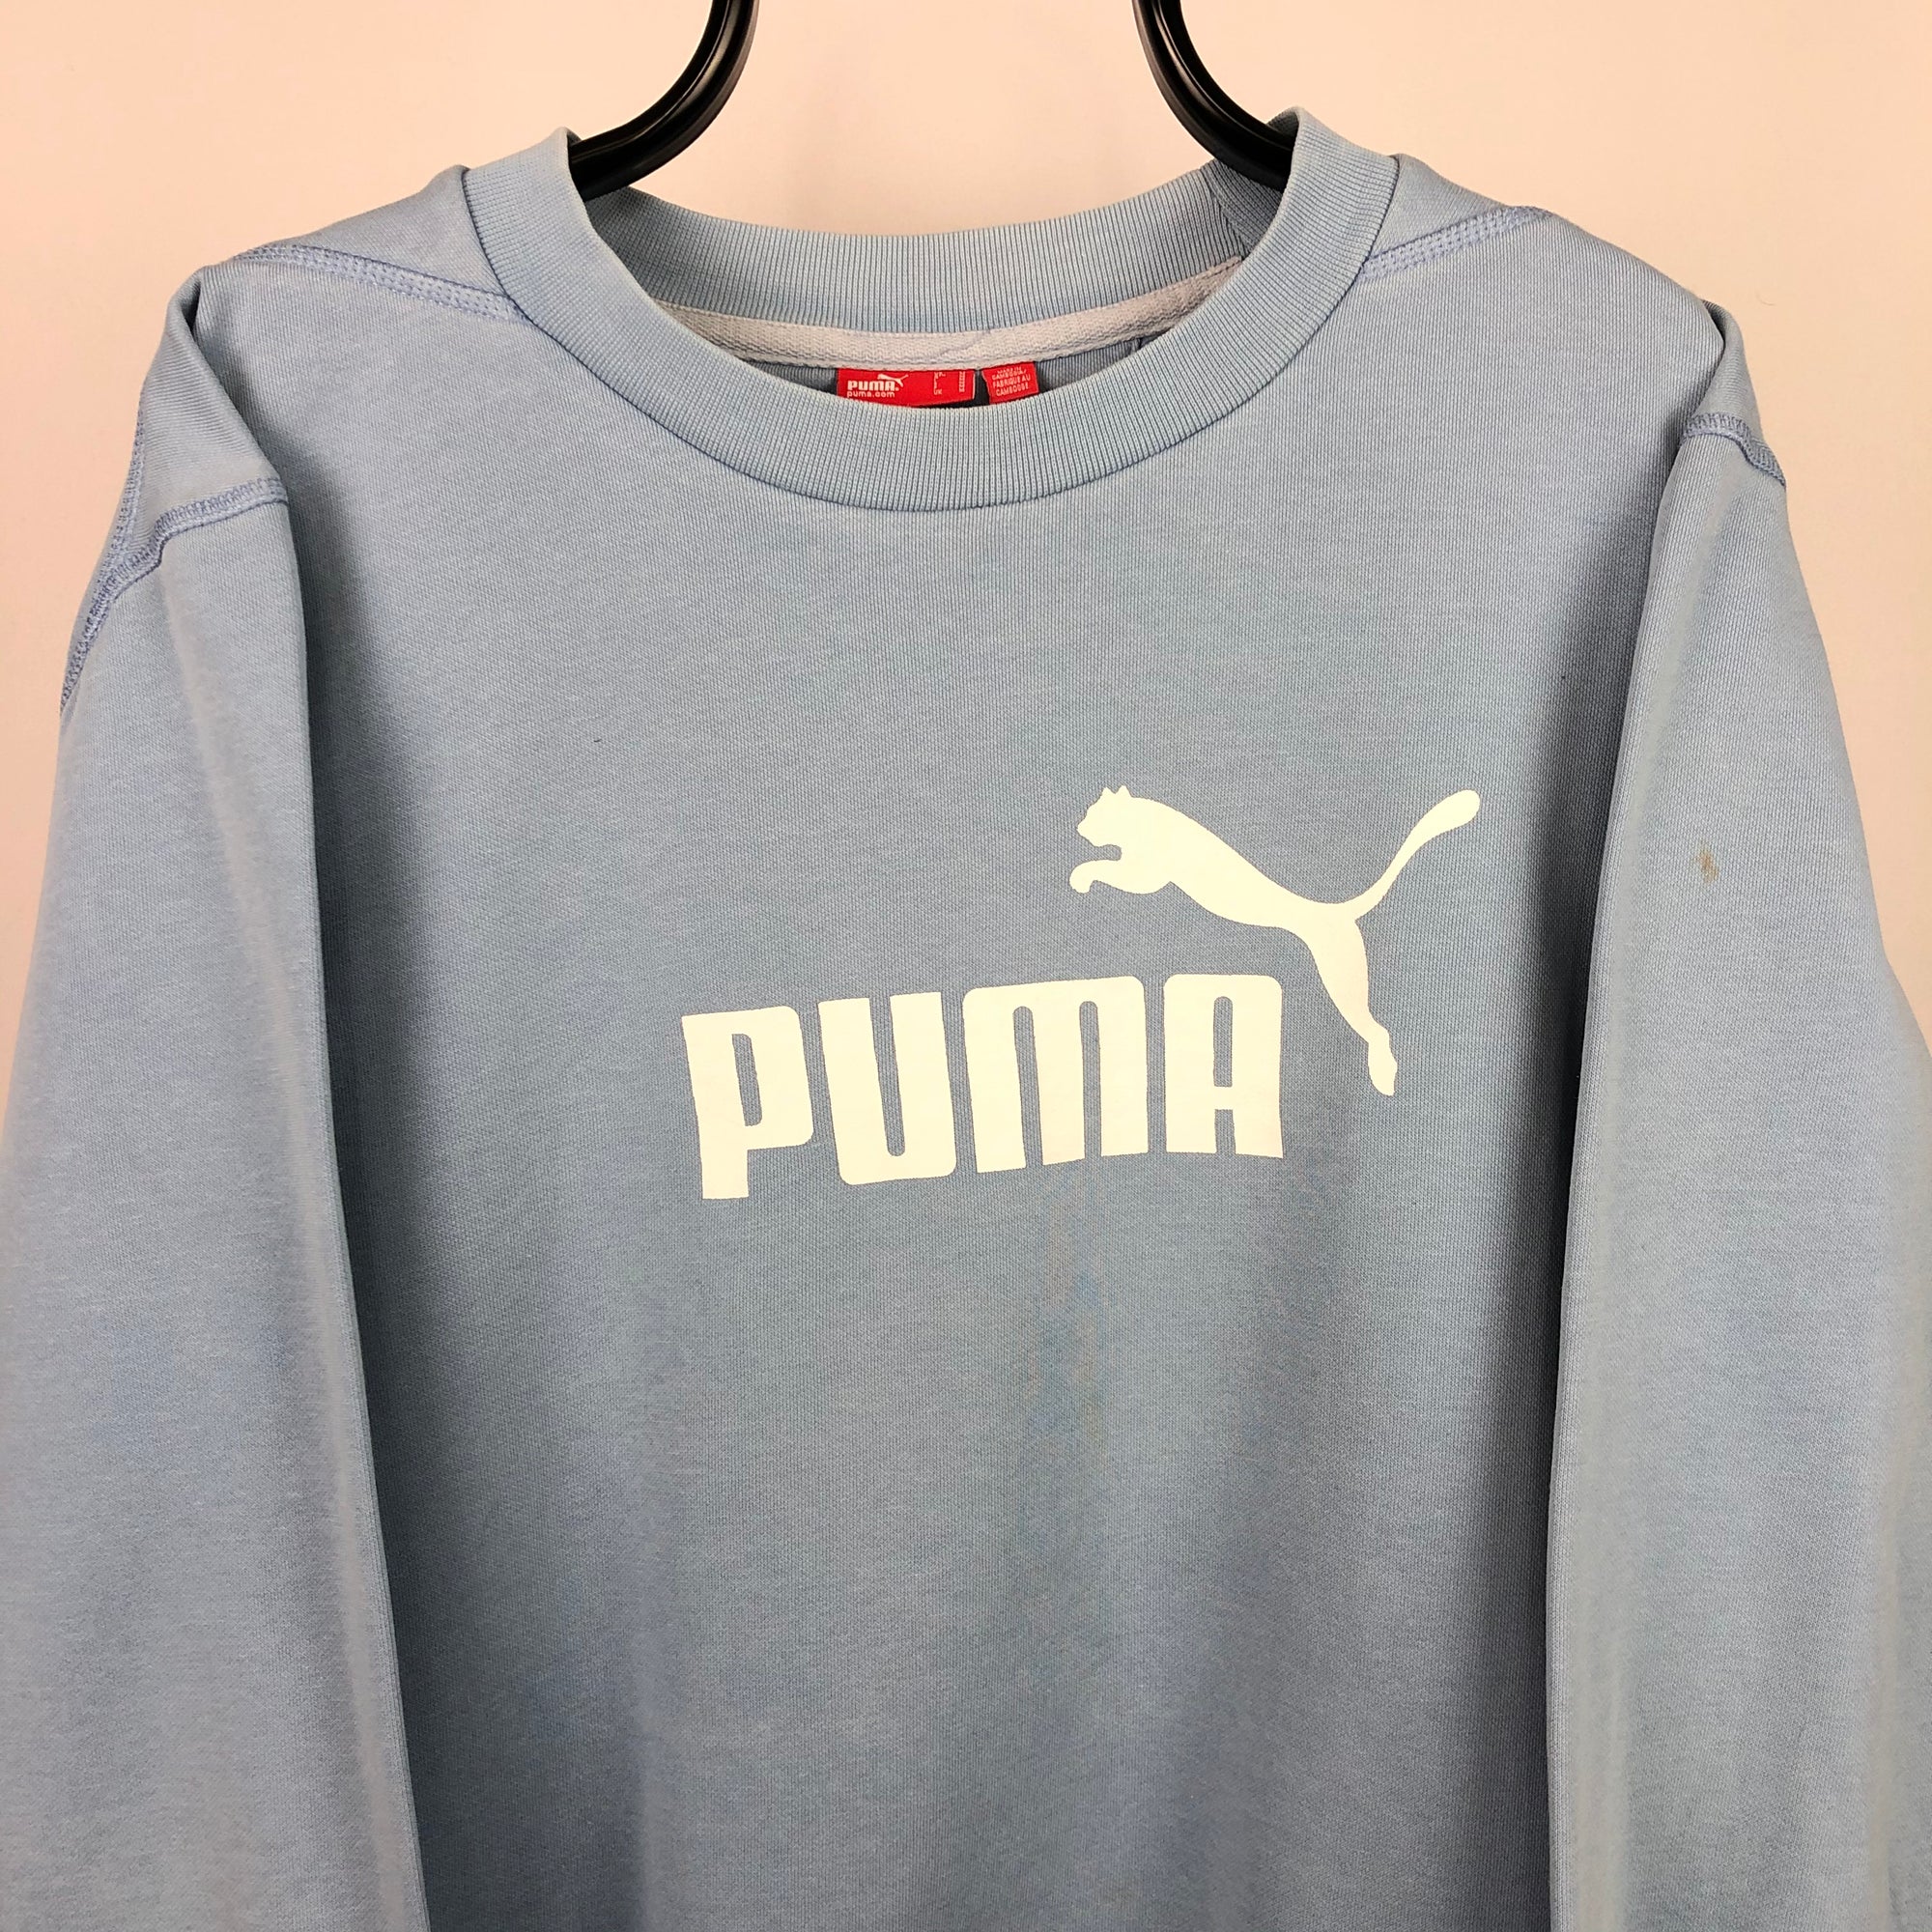 Puma Spellout Sweatshirt in Baby Blue - Men's Large/Women's XL